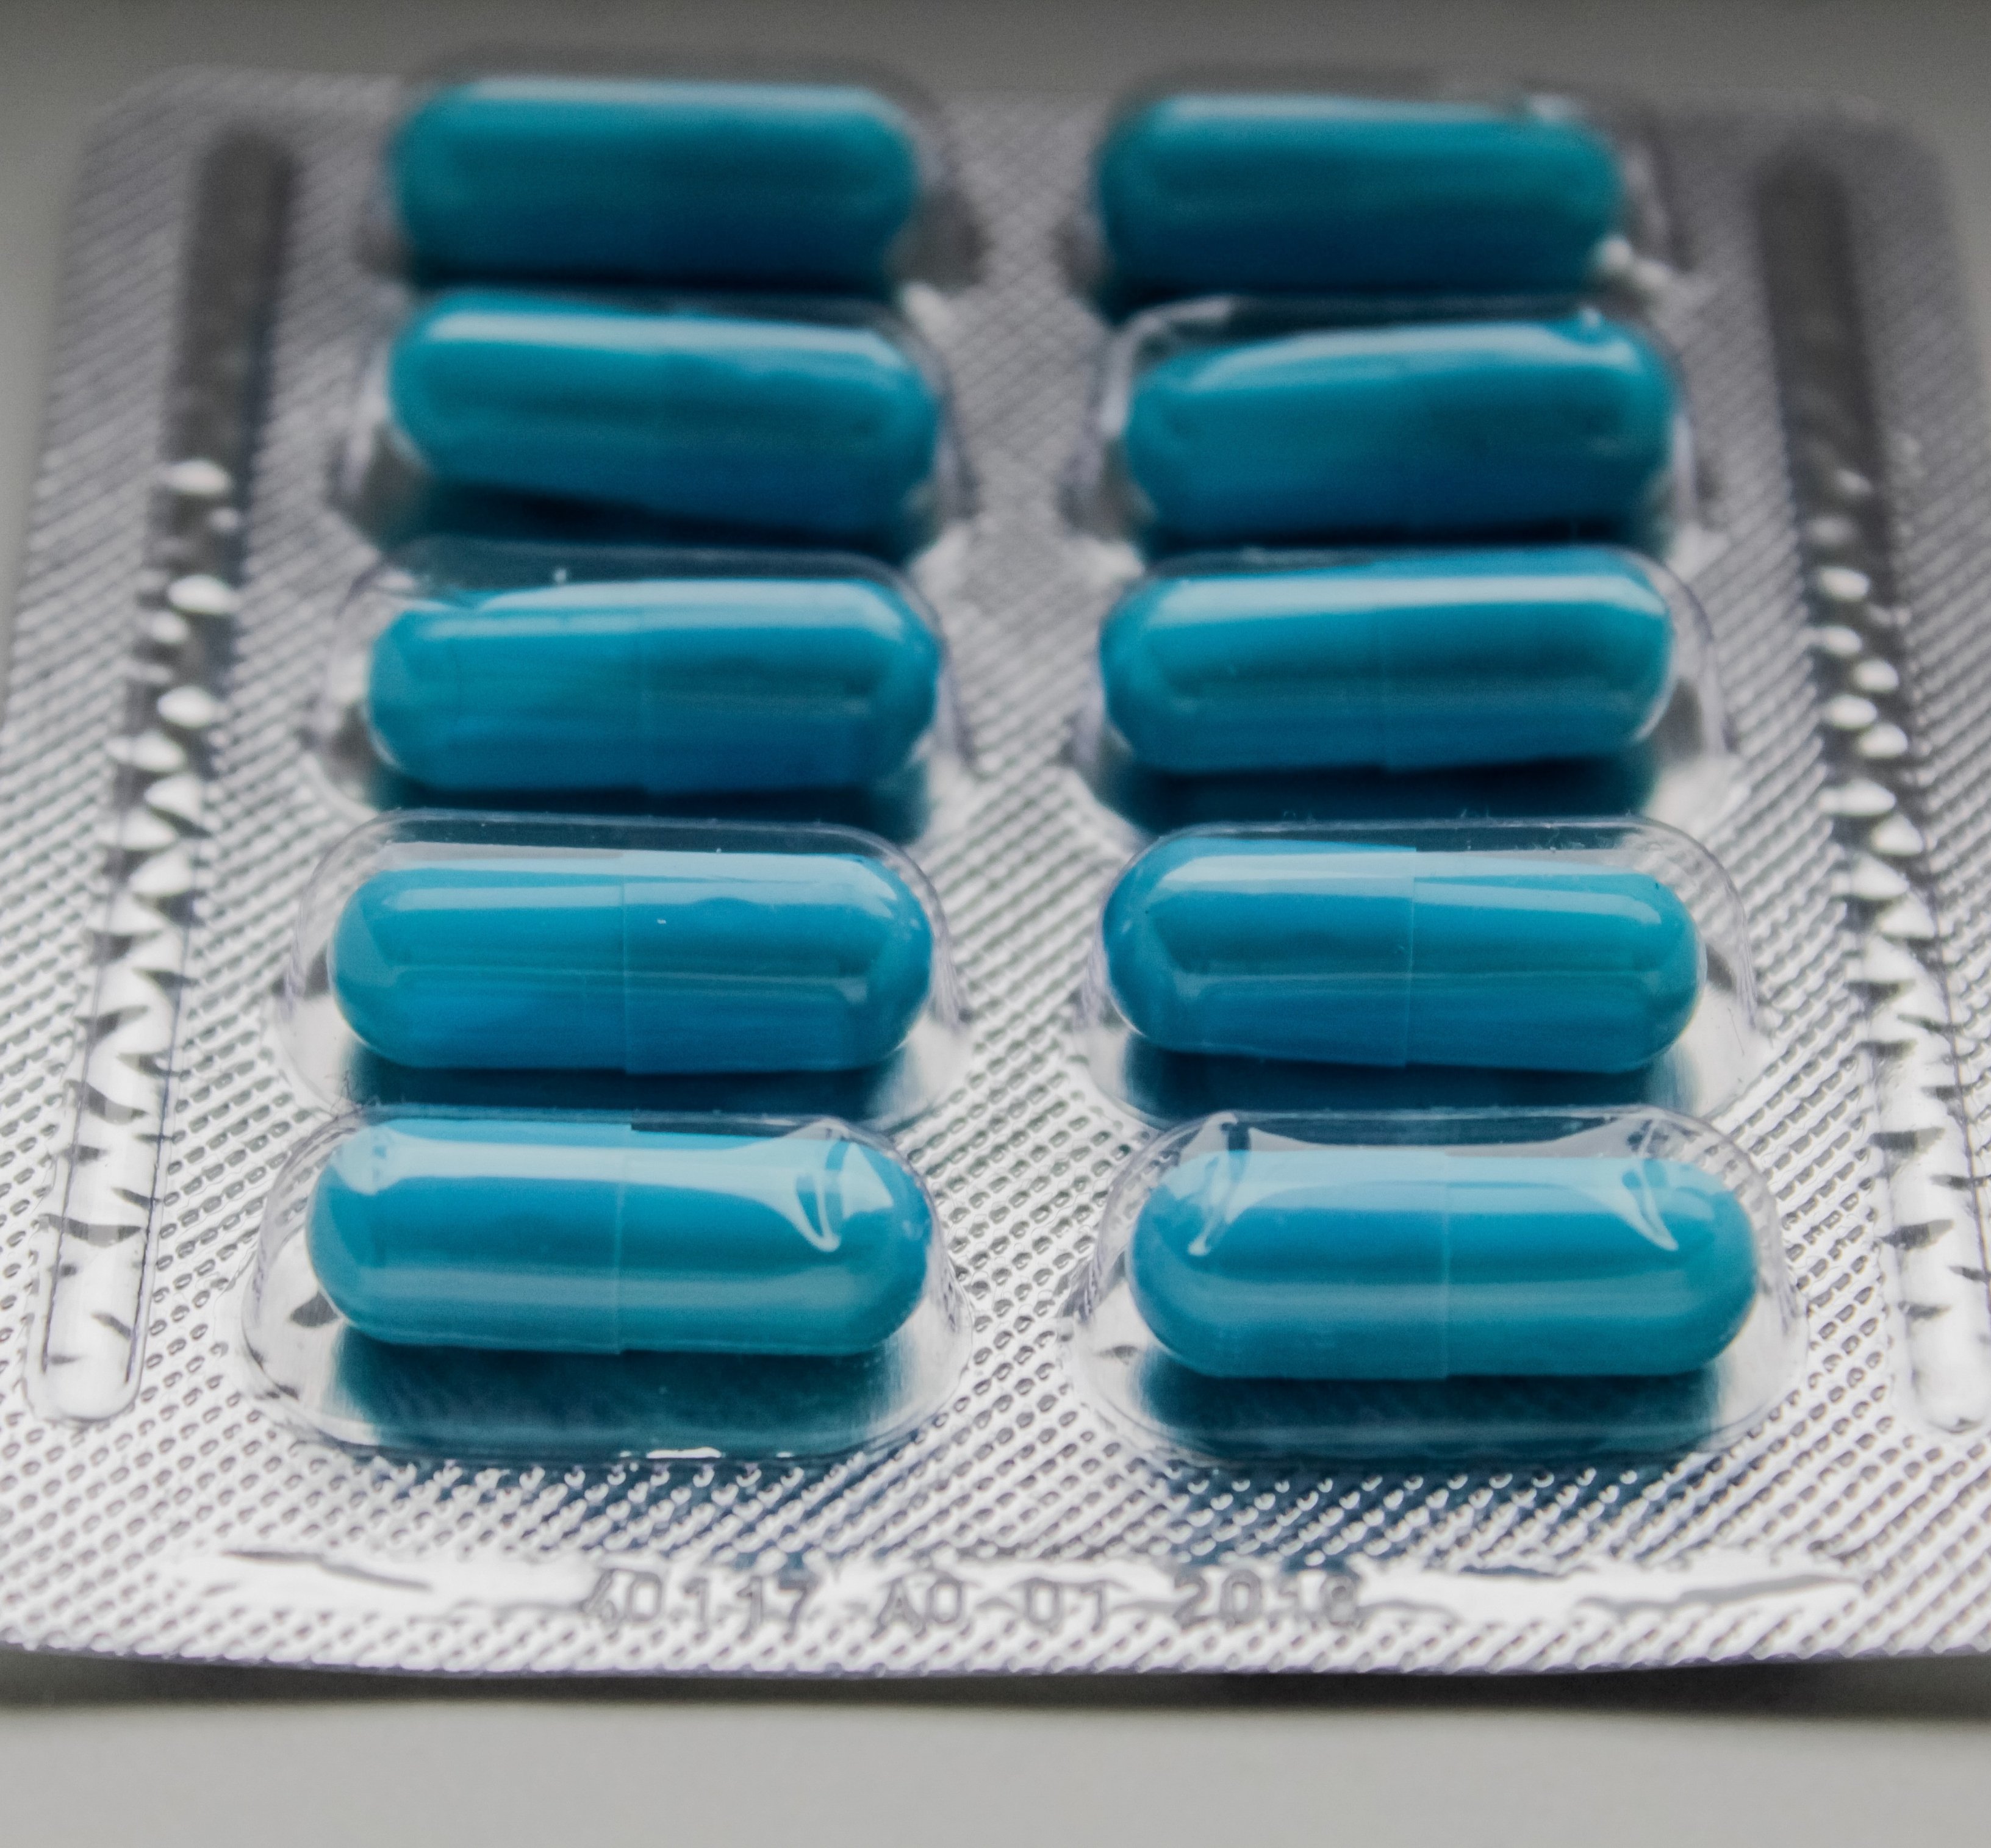 La eficacia de los antidepresivos está siendo cuestionada por estudios científicos